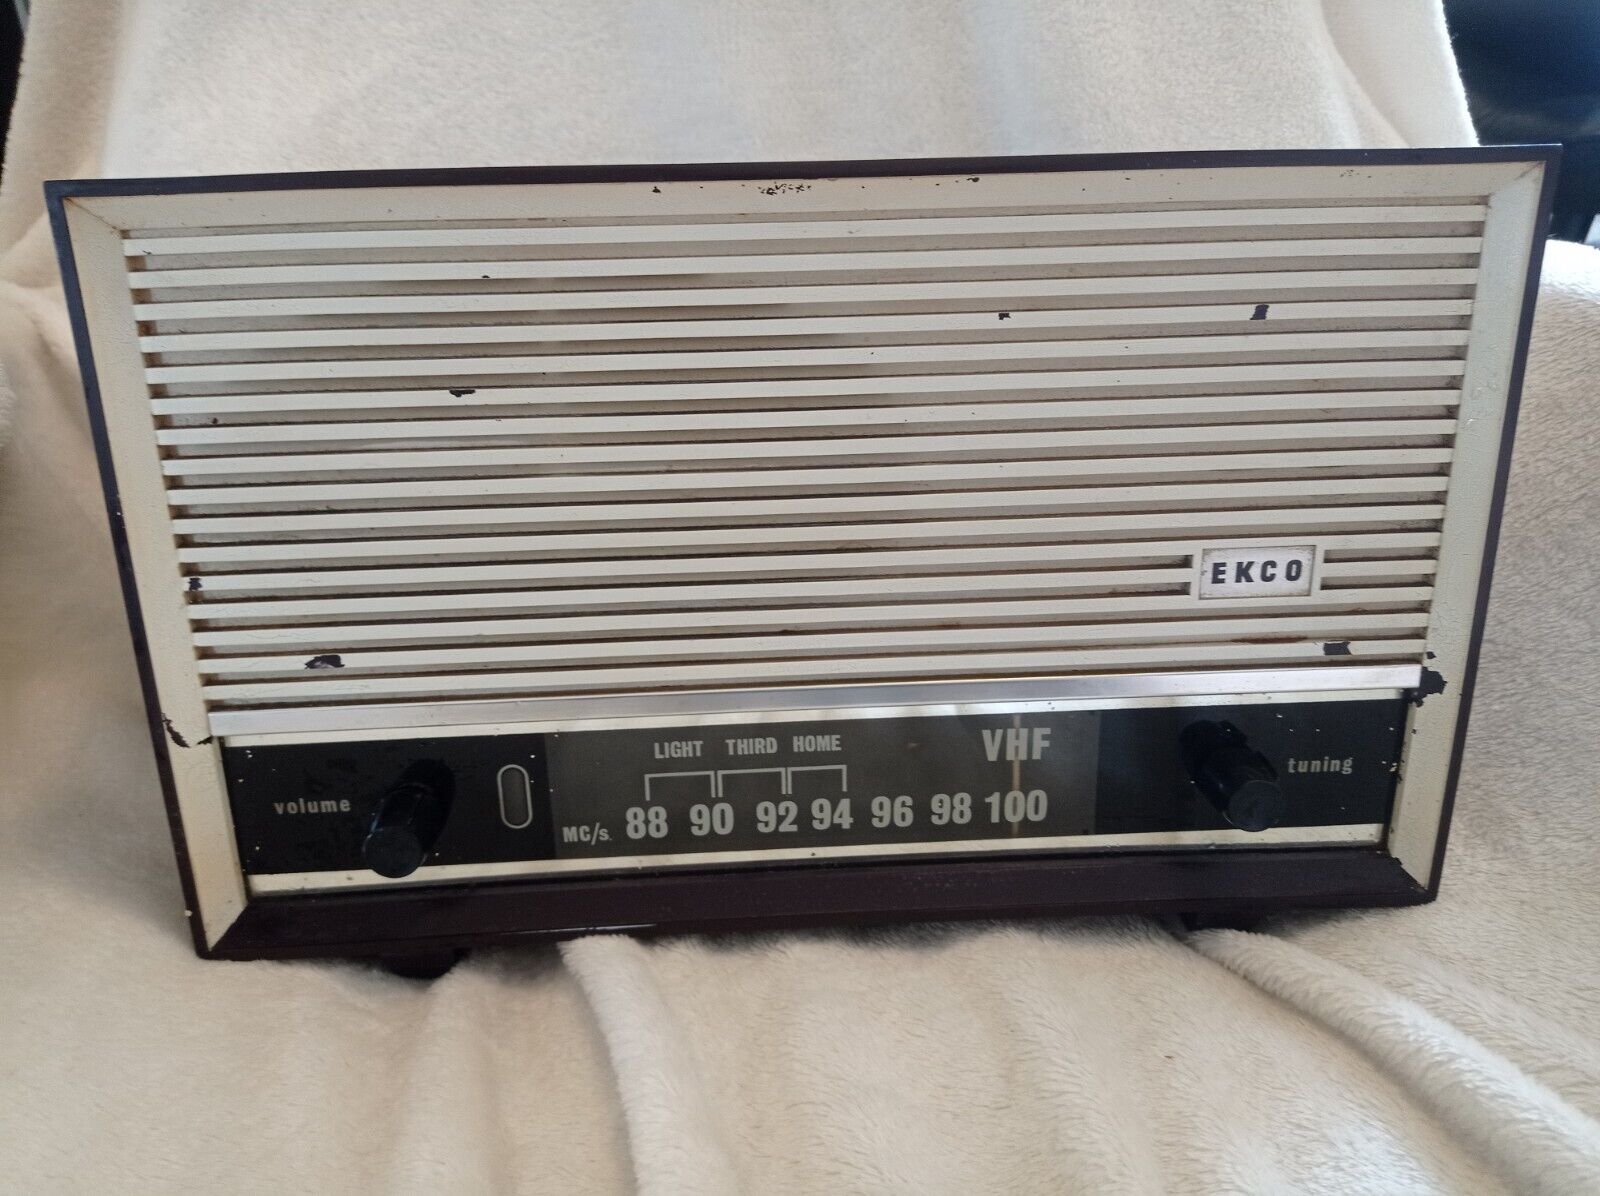 Ecko 1950s Valve Radio - Spares/Repairs